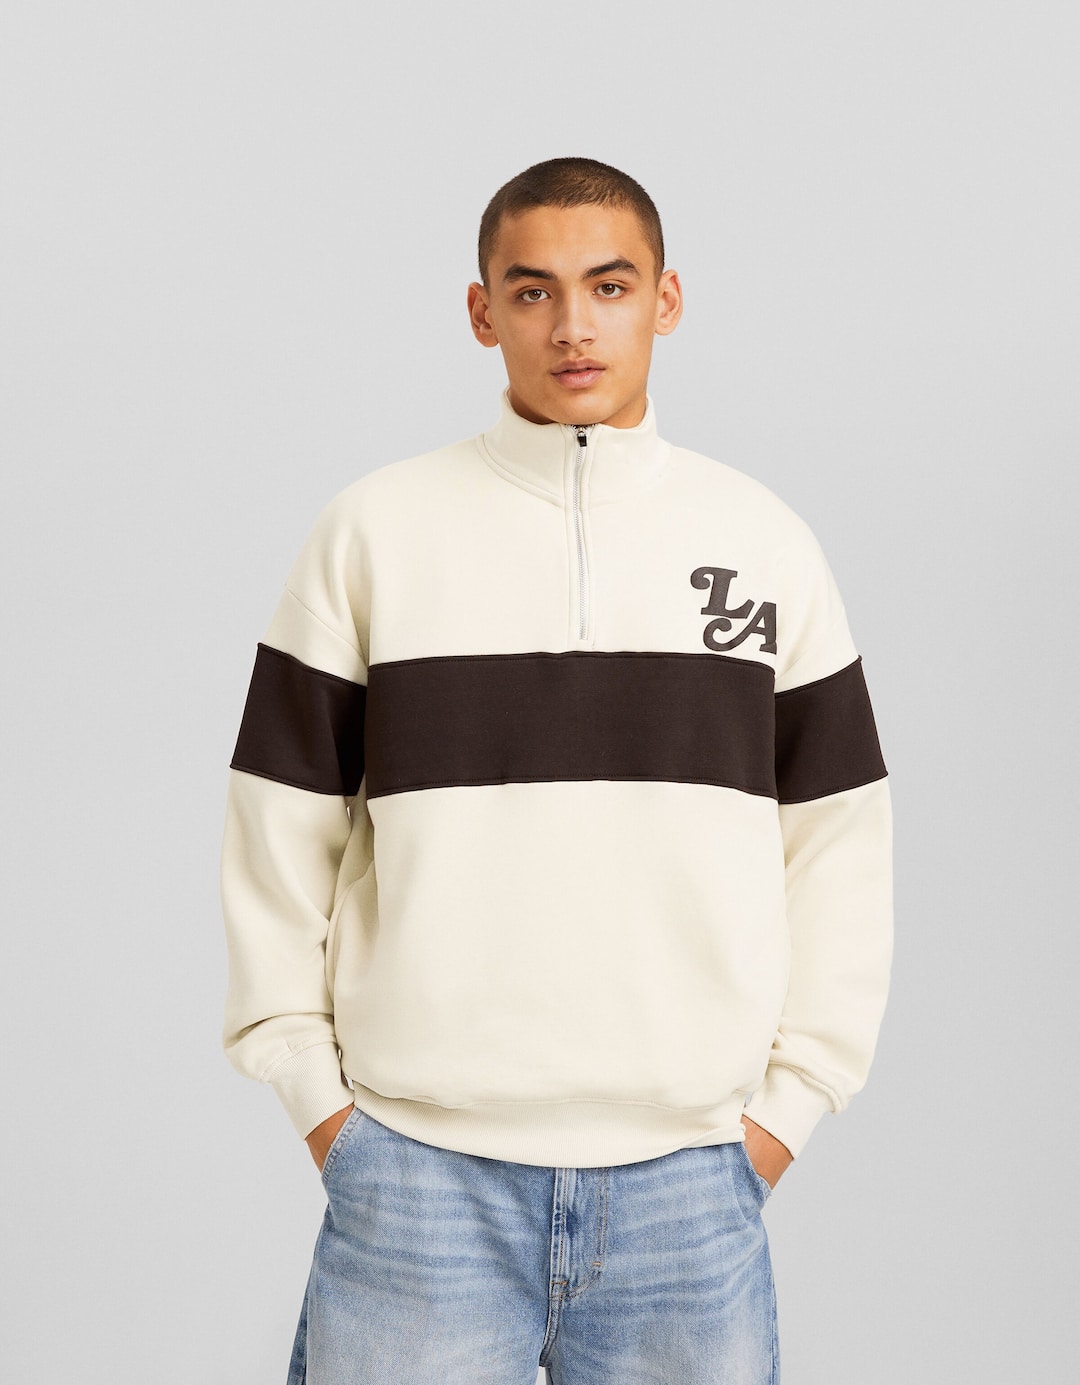 High-neck zip-up sweatshirt